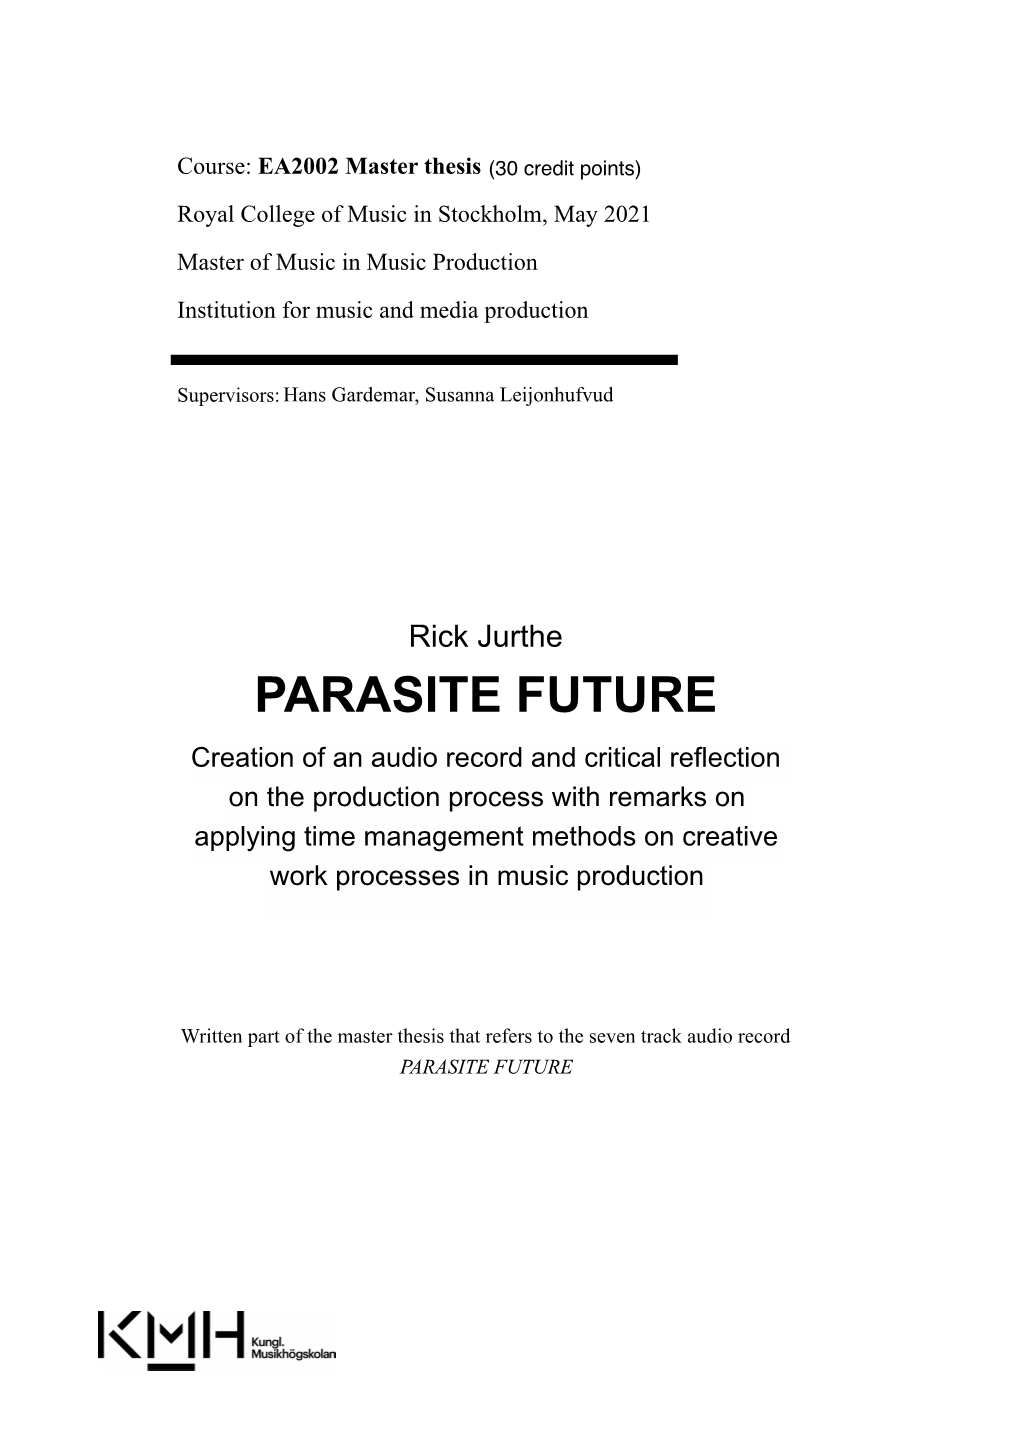 Parasite Future